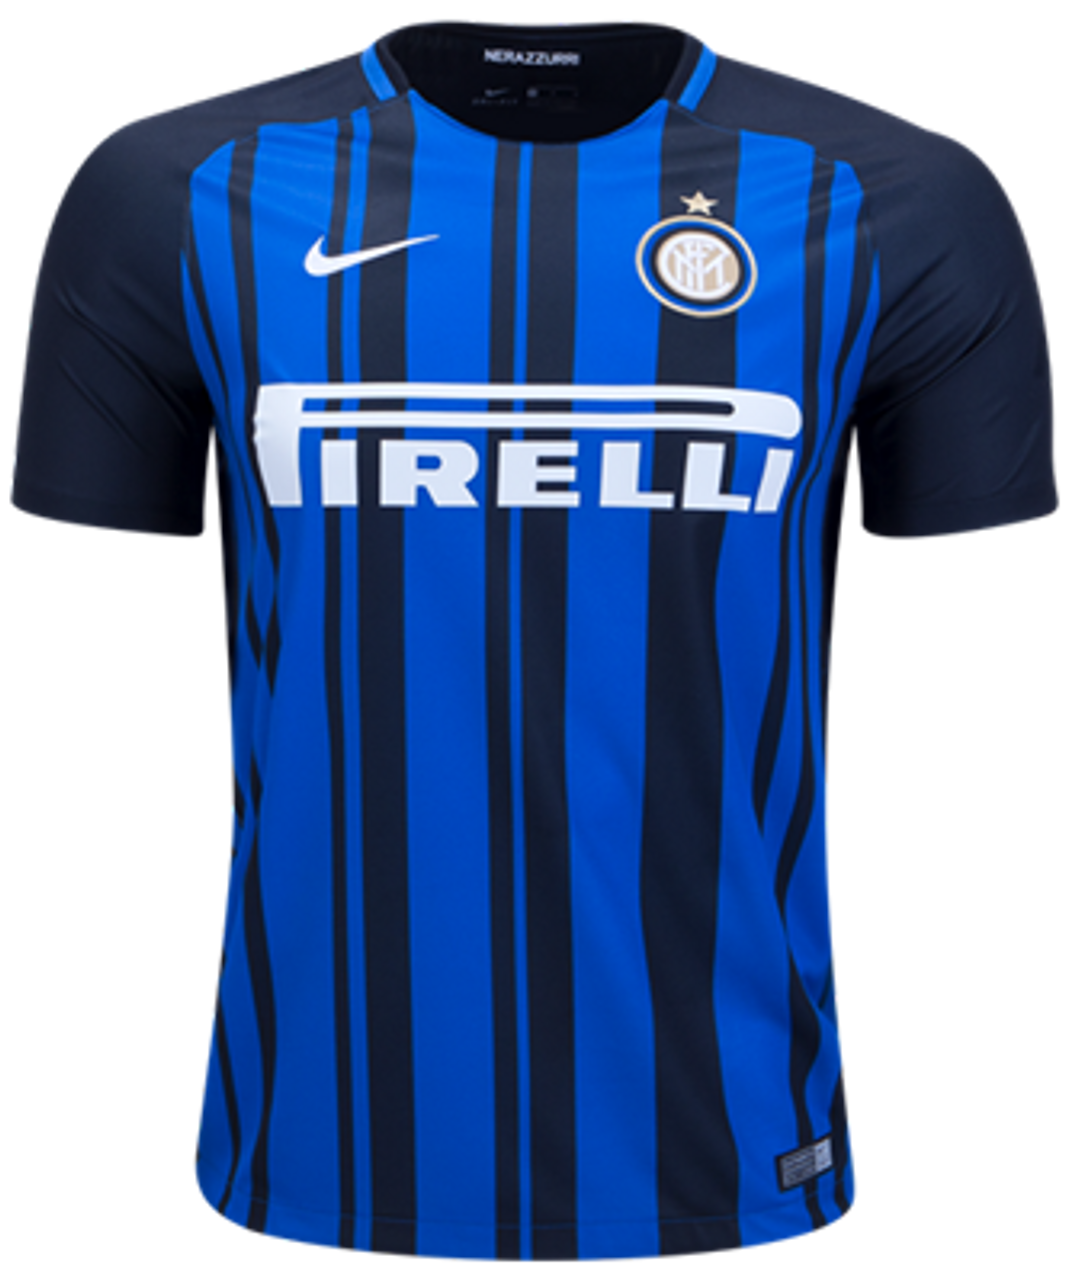 Inter Milan Jersey Men's Home Season 18/19 Size M, L and XL